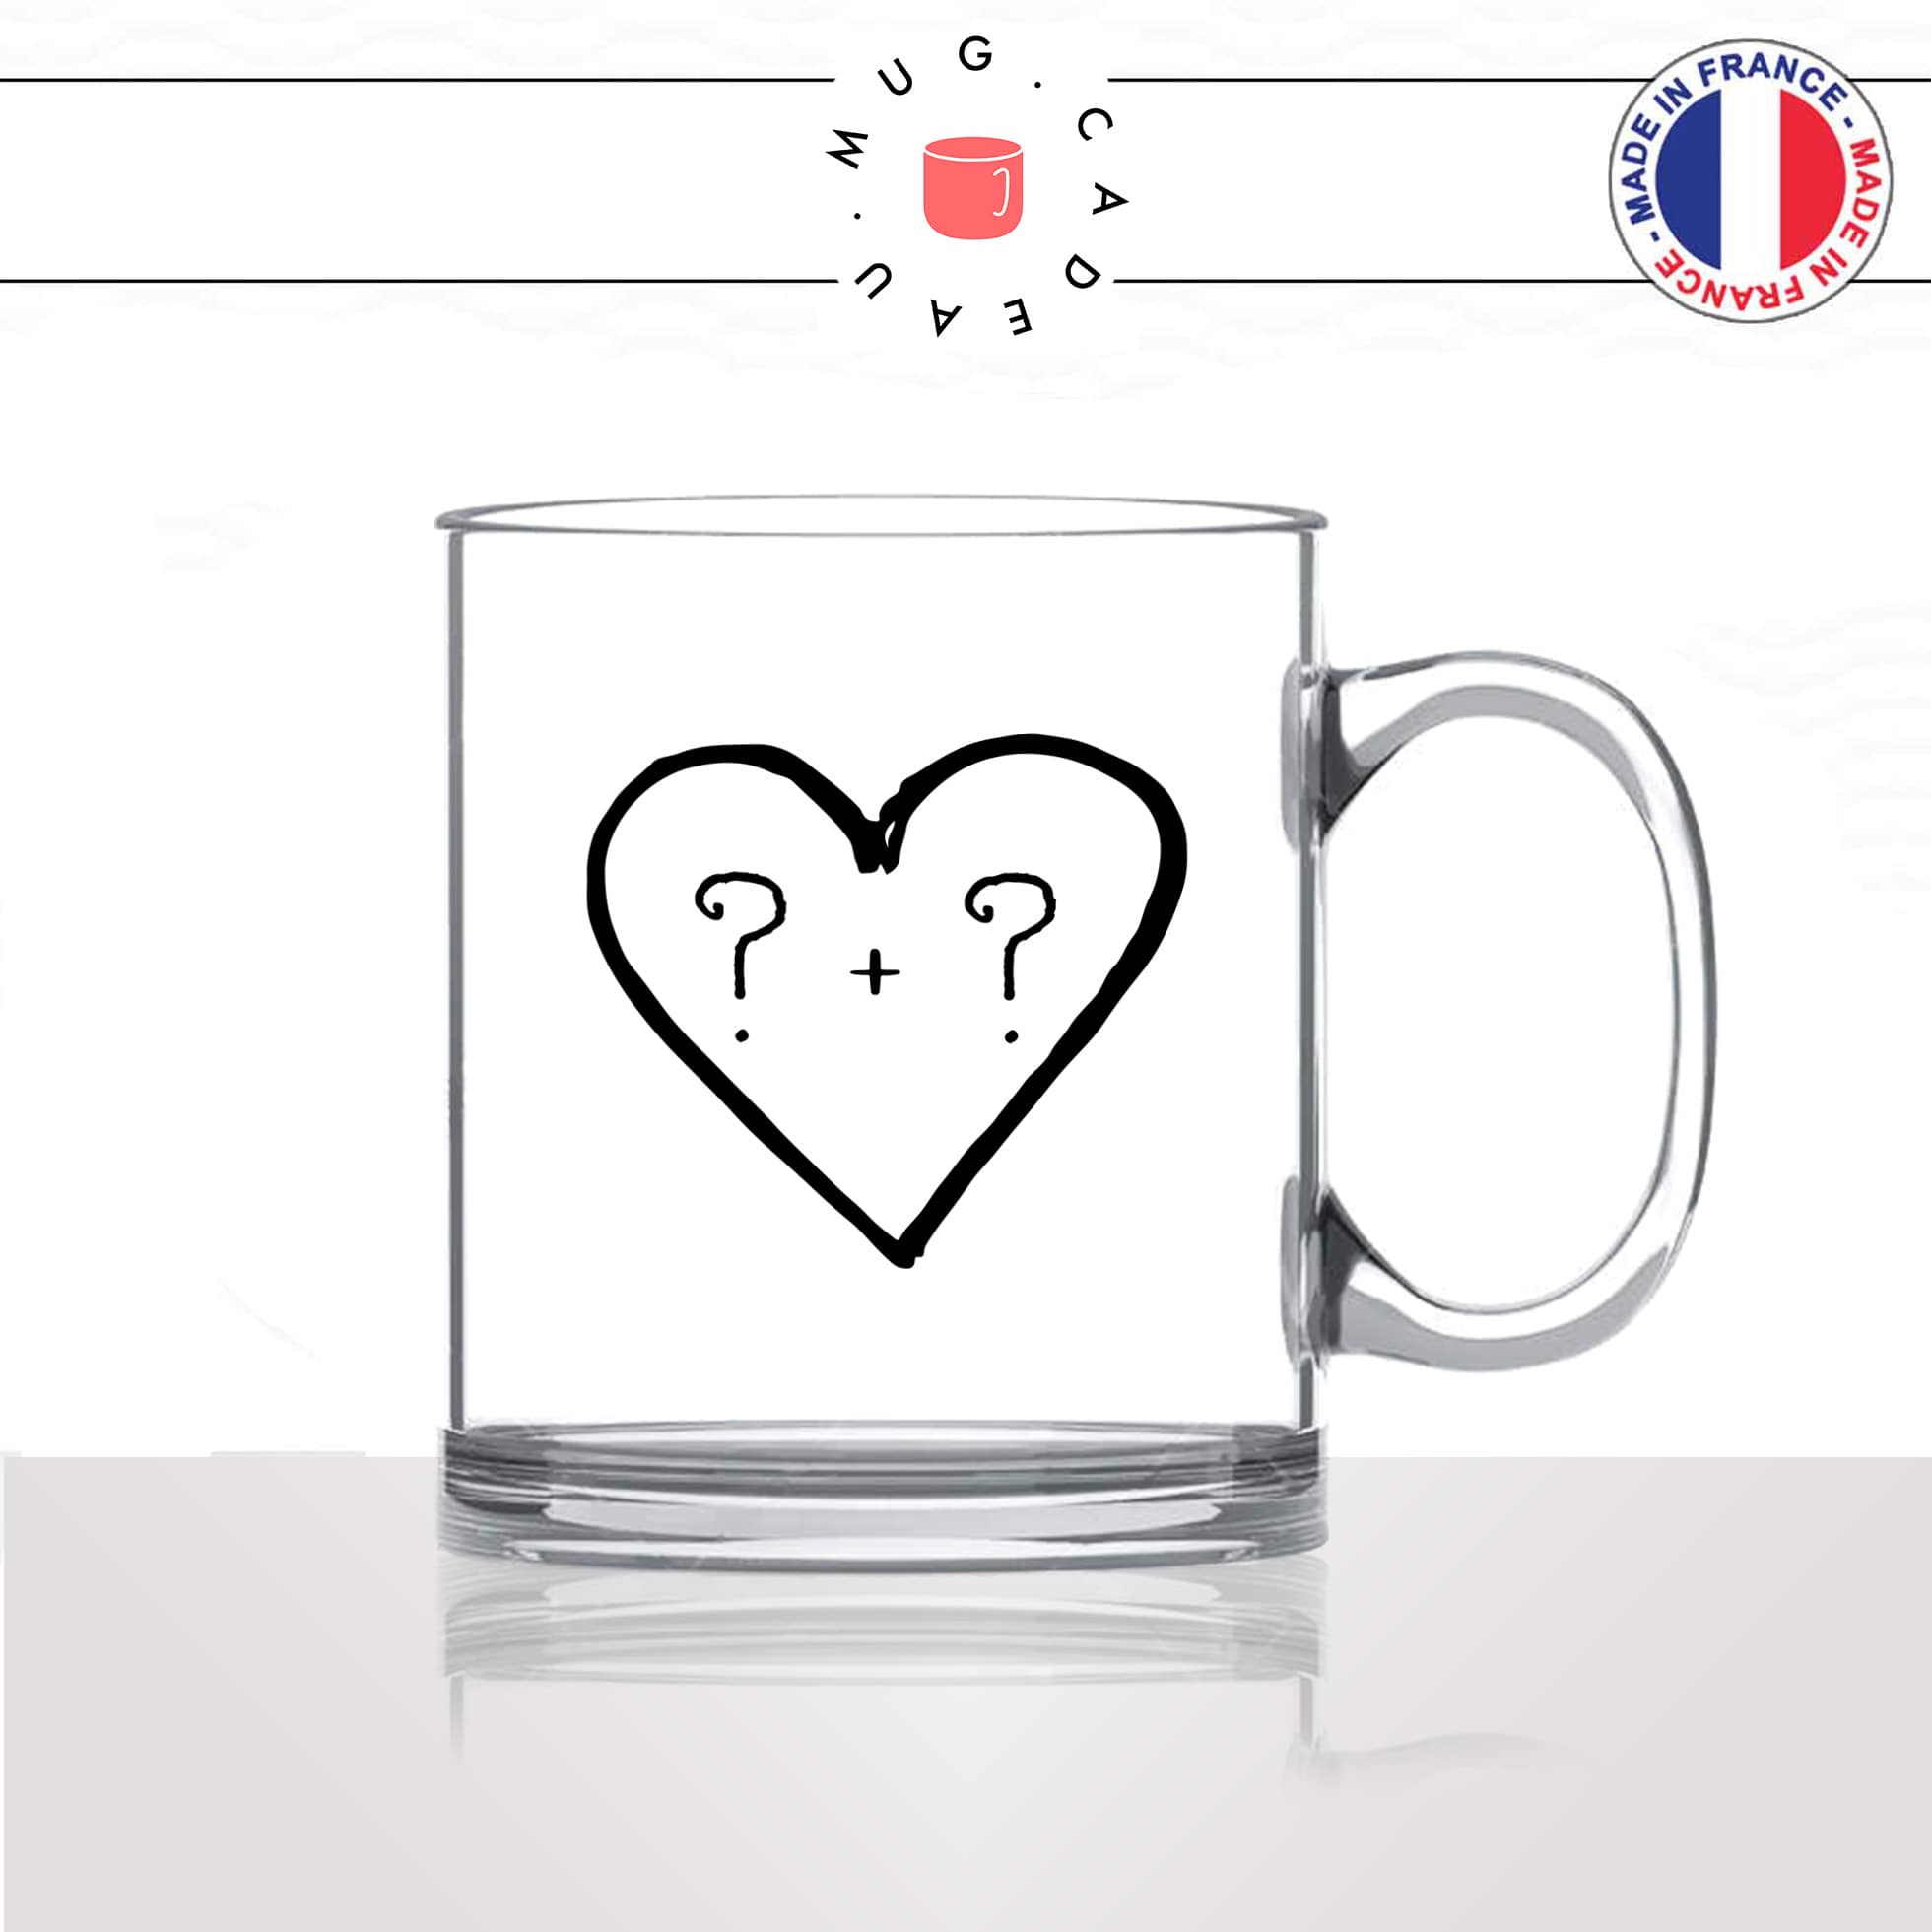 mug-tasse-en-verre-transparent-glass-initiales-homme-femme-amoureux-coeur-couple-st-valentin-je-taime-amour-café-thé-idée-cadeau-original-personnalisé2-min